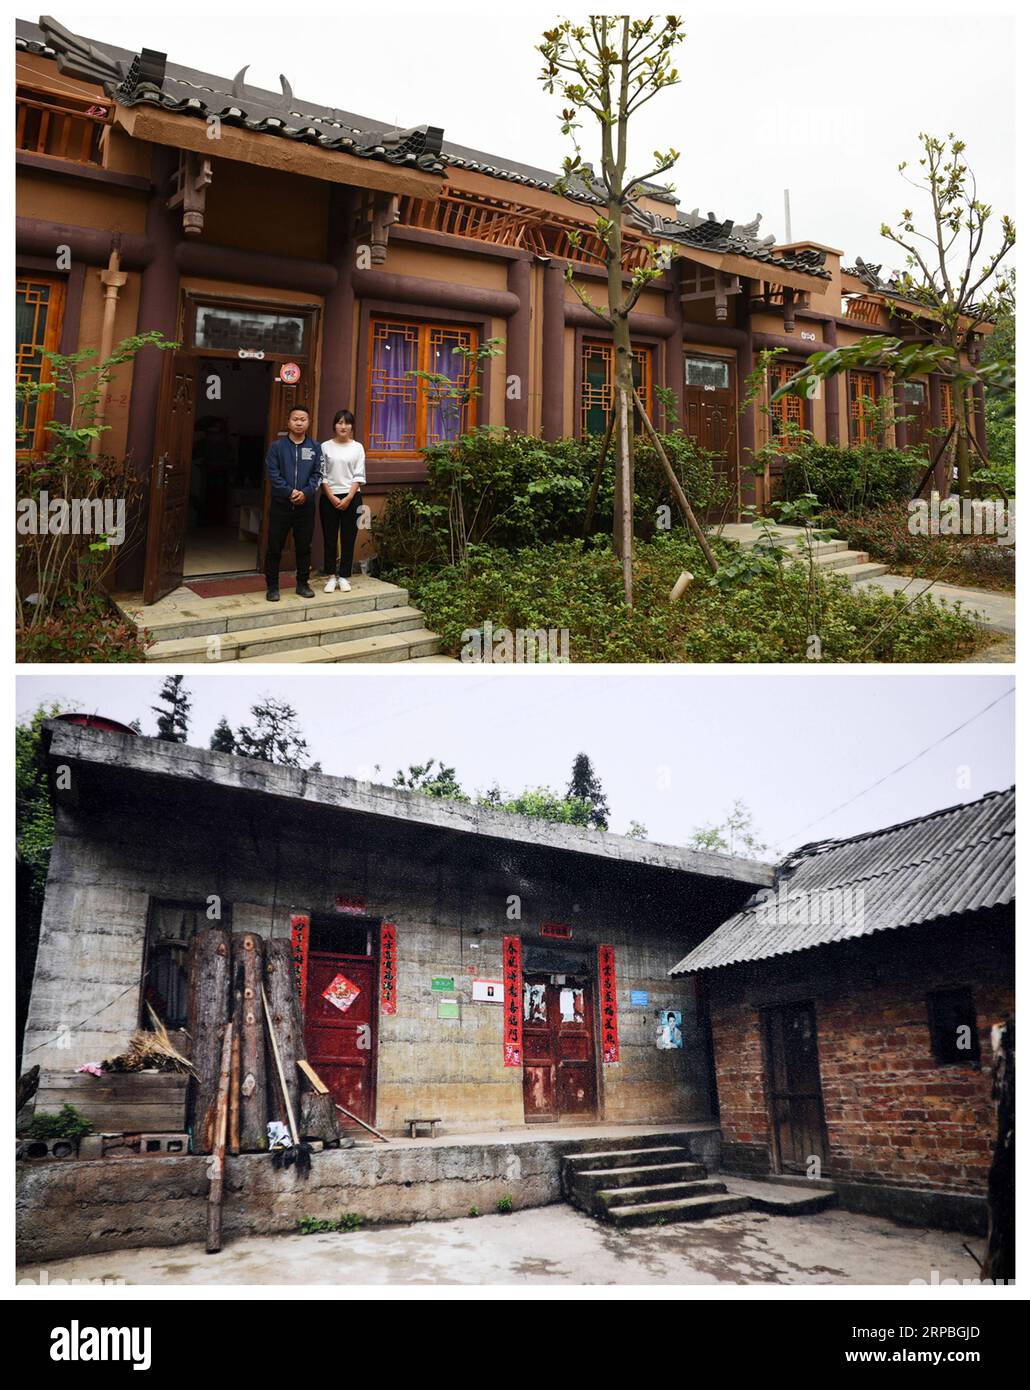 (190608) -- GUIYANG, 8. Juni 2019 (Xinhua) -- das am 6. Juni 2019 aufgenommene Combo-Foto zeigt Wang Yongze und seine Frau, die für ein Foto in ihrem neuen Haus in der Stadt A-mei Qituo (up) posieren, und Wang Yongze's altes Wohnhaus in der Stadt Sanbao im Qinglong County, Provinz Guizhou im Südwesten Chinas. Die verarmten Dorfbewohner von Sanbao verlassen ihre schäbigen Häuser am steilen Hang und genießen ein besseres Leben. Die von Armut betroffenen Familien in der Stadt Sanbao sind mit Hilfe der lokalen Regierung in neue Häuser in der Stadt A-mei Qituo gezogen. (XINHUA/YANG WENBIN) CHINA-GUIZHOU-YI ETHNISCHE GRUPPE-STADT-UMSIEDLUNG-A-MEI QITUO (CN) Stockfoto